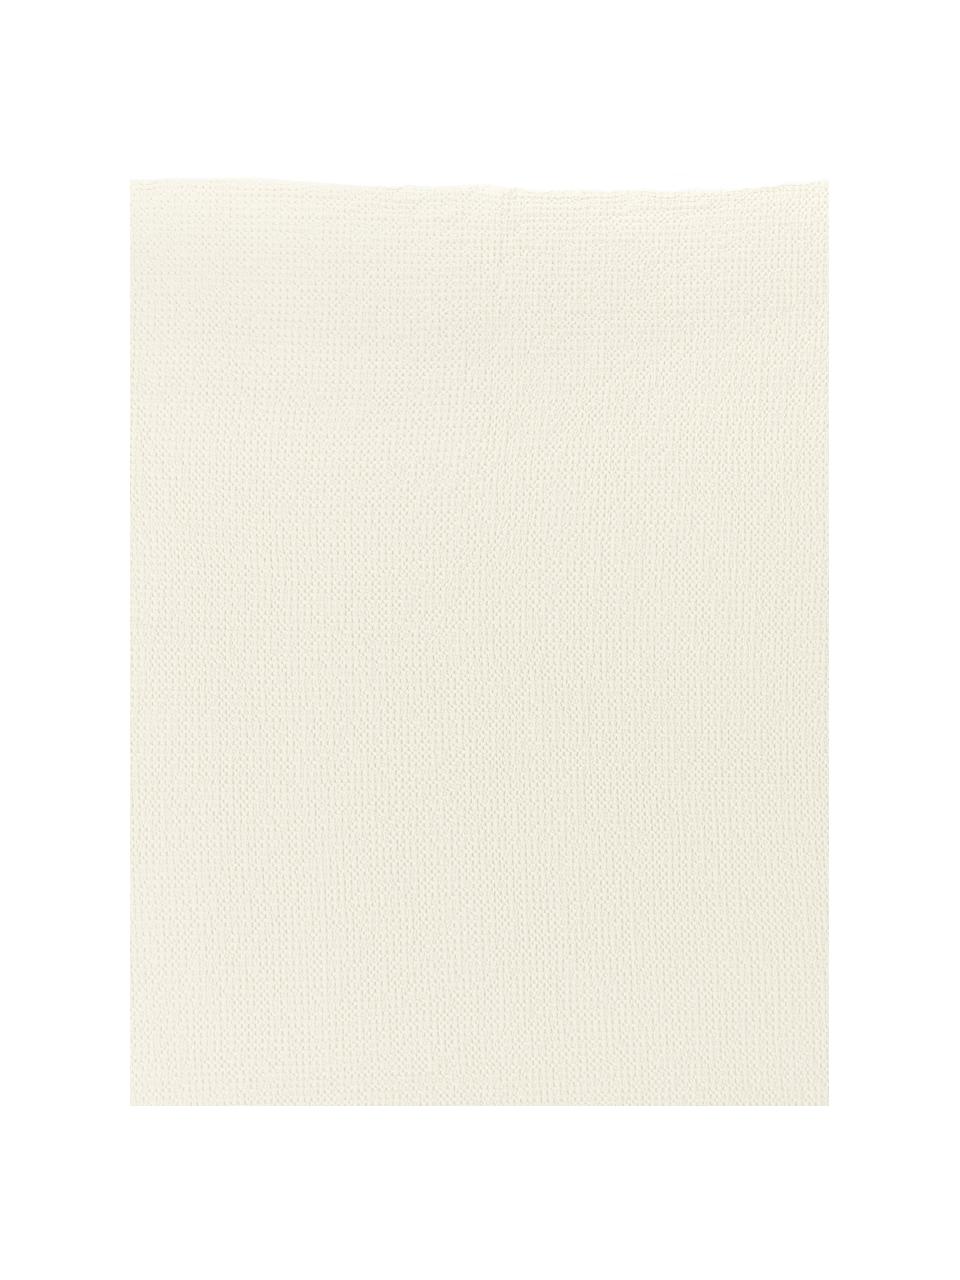 Tagesdecke Vigo mit strukturierter Oberfläche, 100% Baumwolle, Creme, B 220 x L 240 cm (für Betten bis 180 x 200 cm)